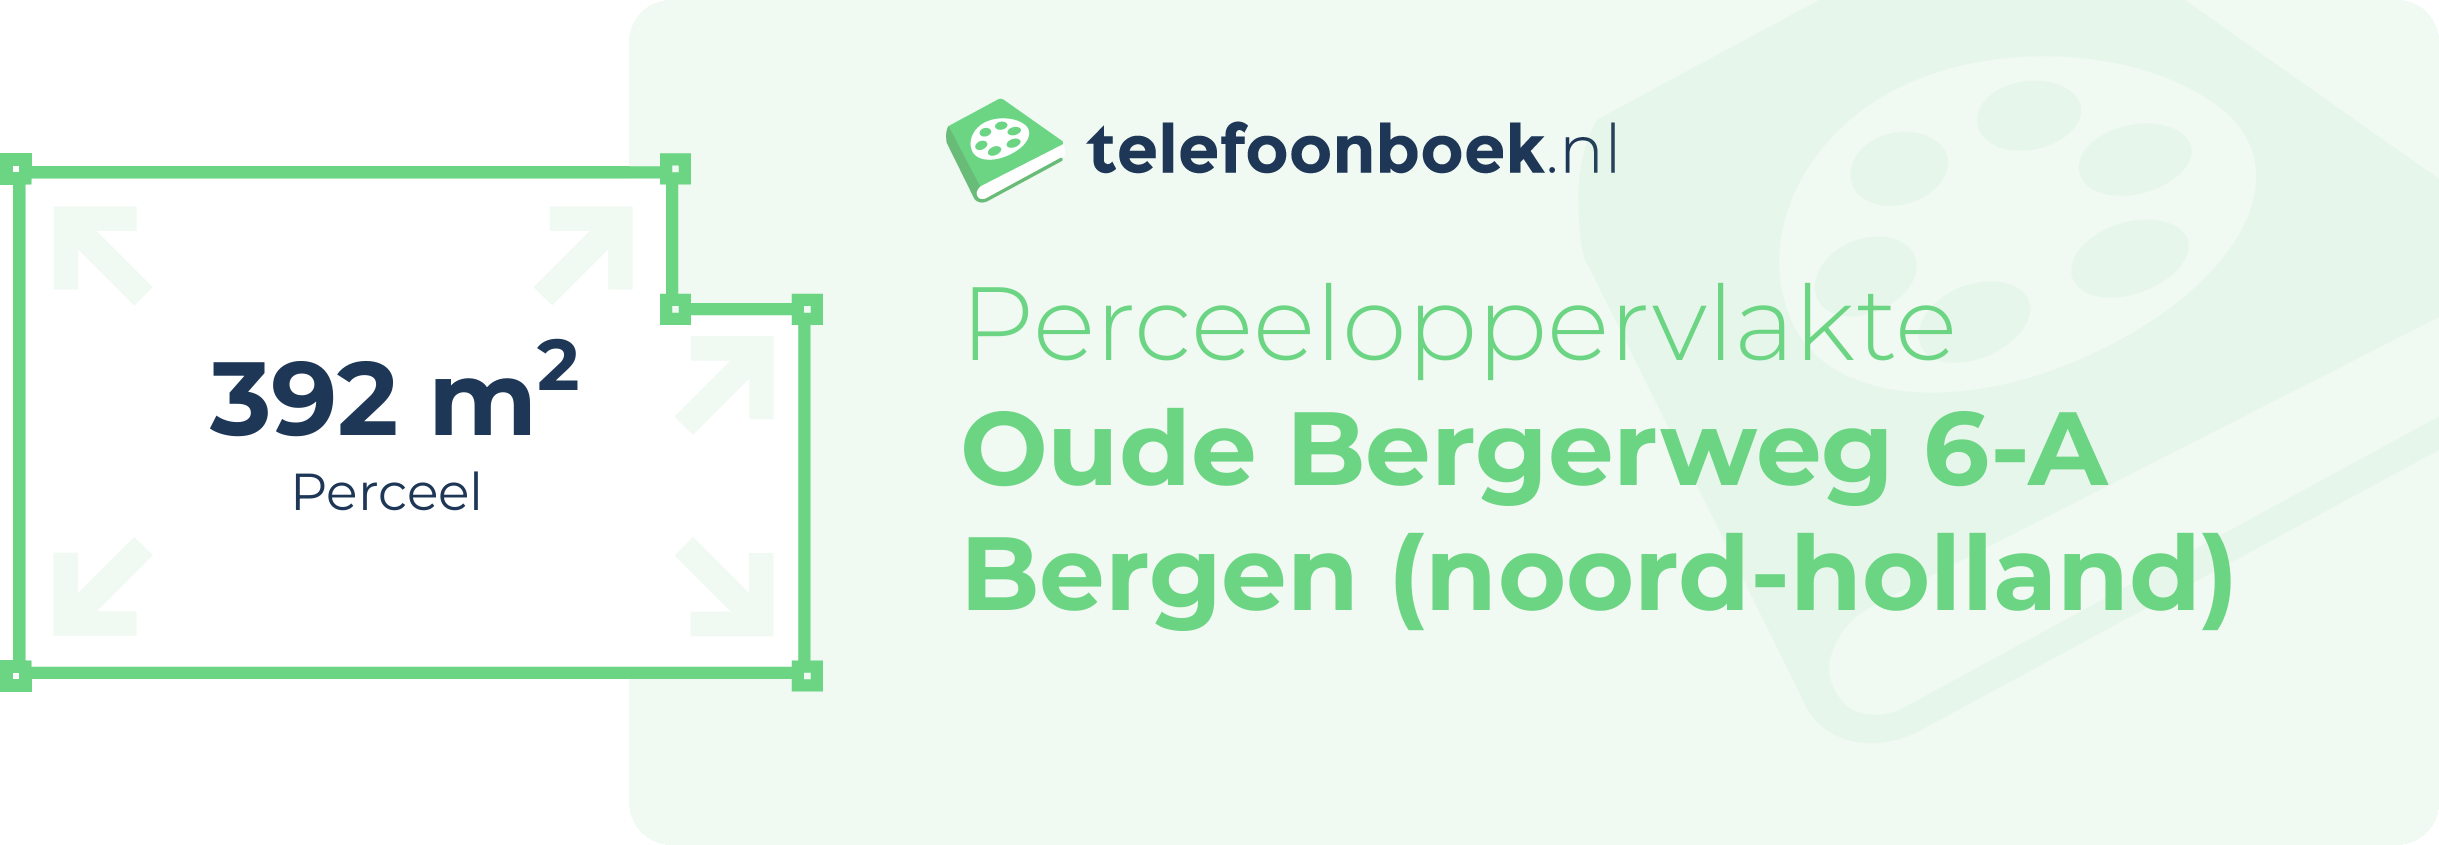 Perceeloppervlakte Oude Bergerweg 6-A Bergen (Noord-Holland)